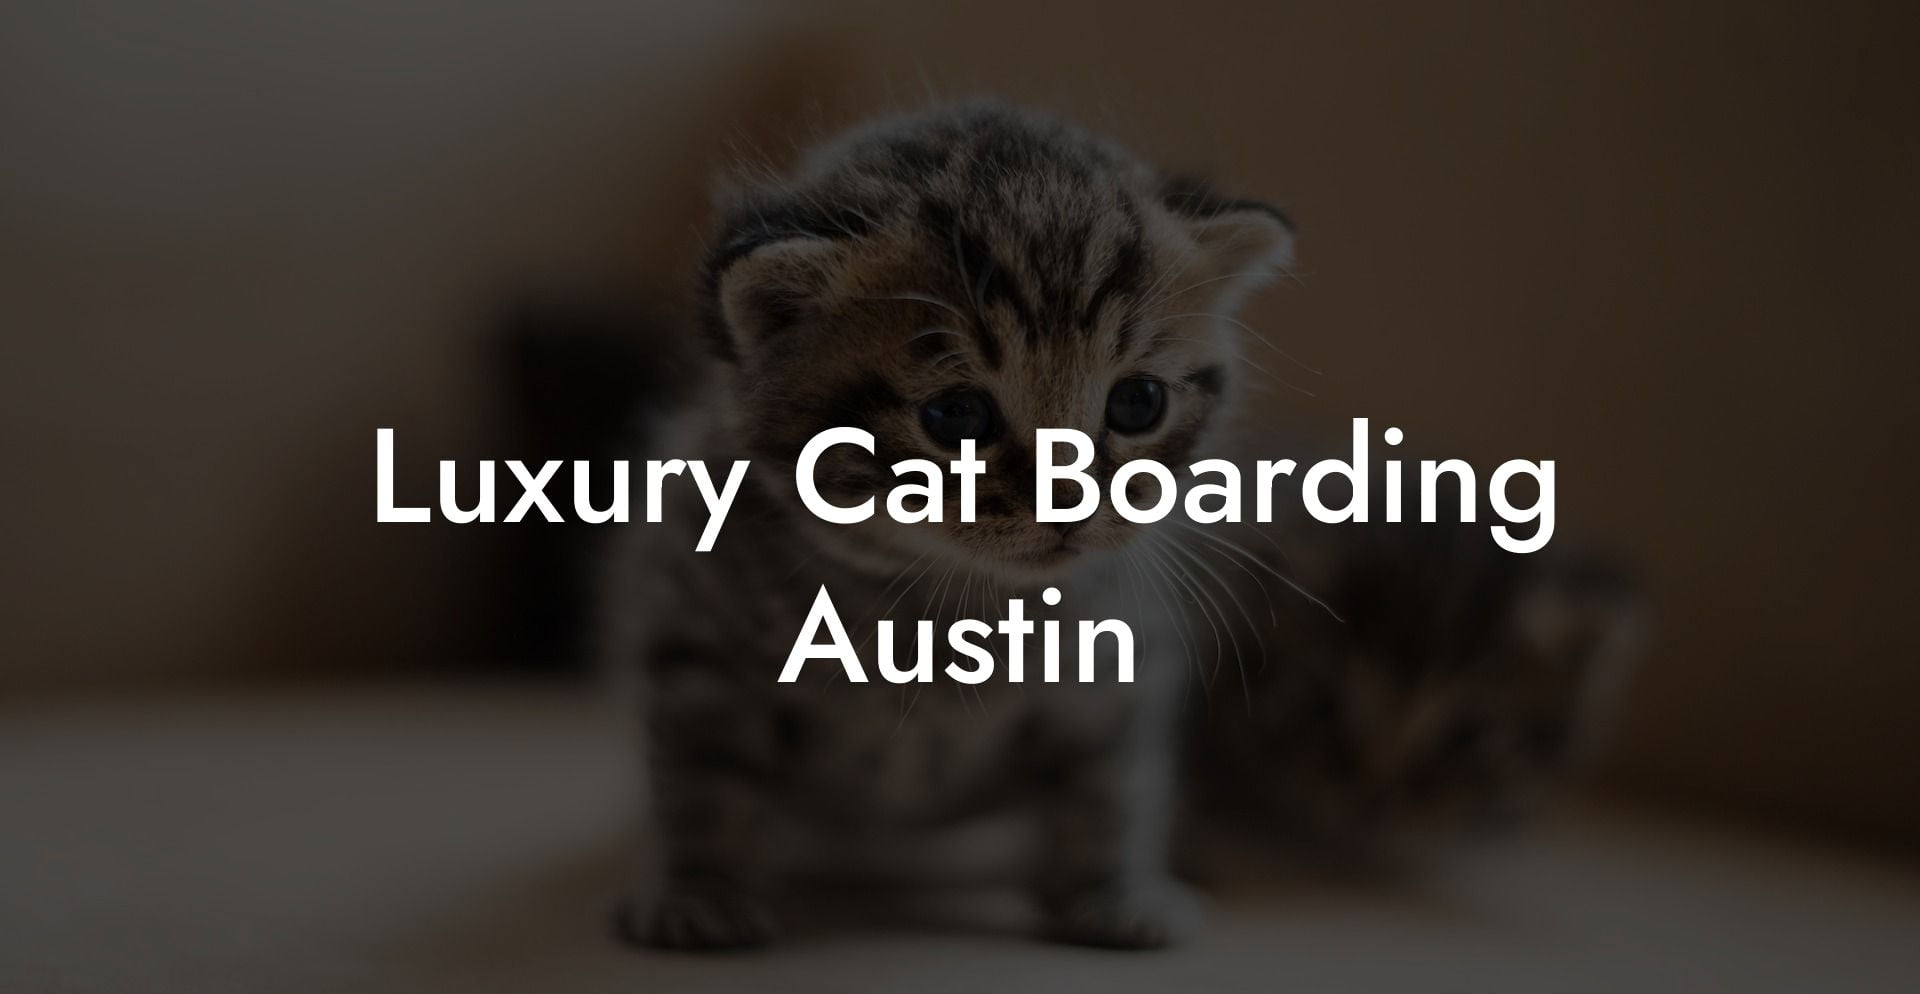 Luxury Cat Boarding Austin